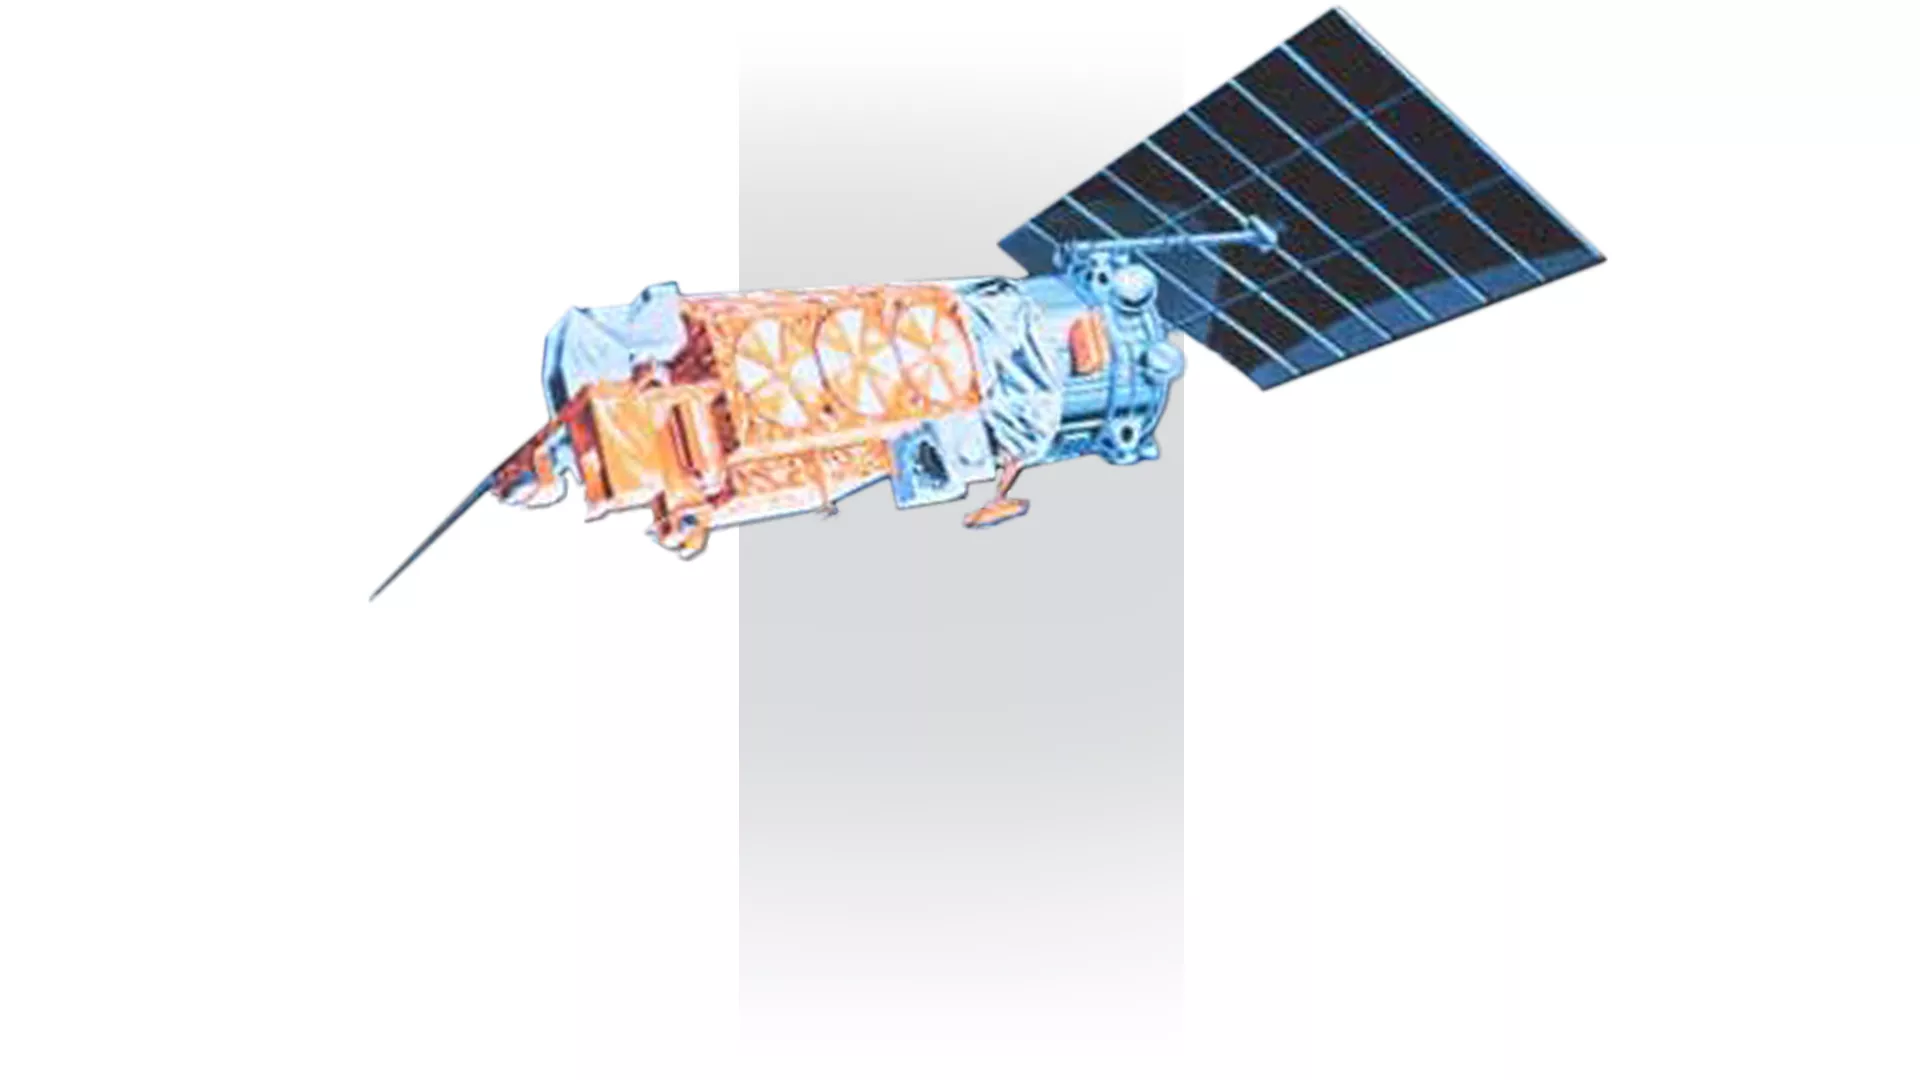 NOAA-6 satellite